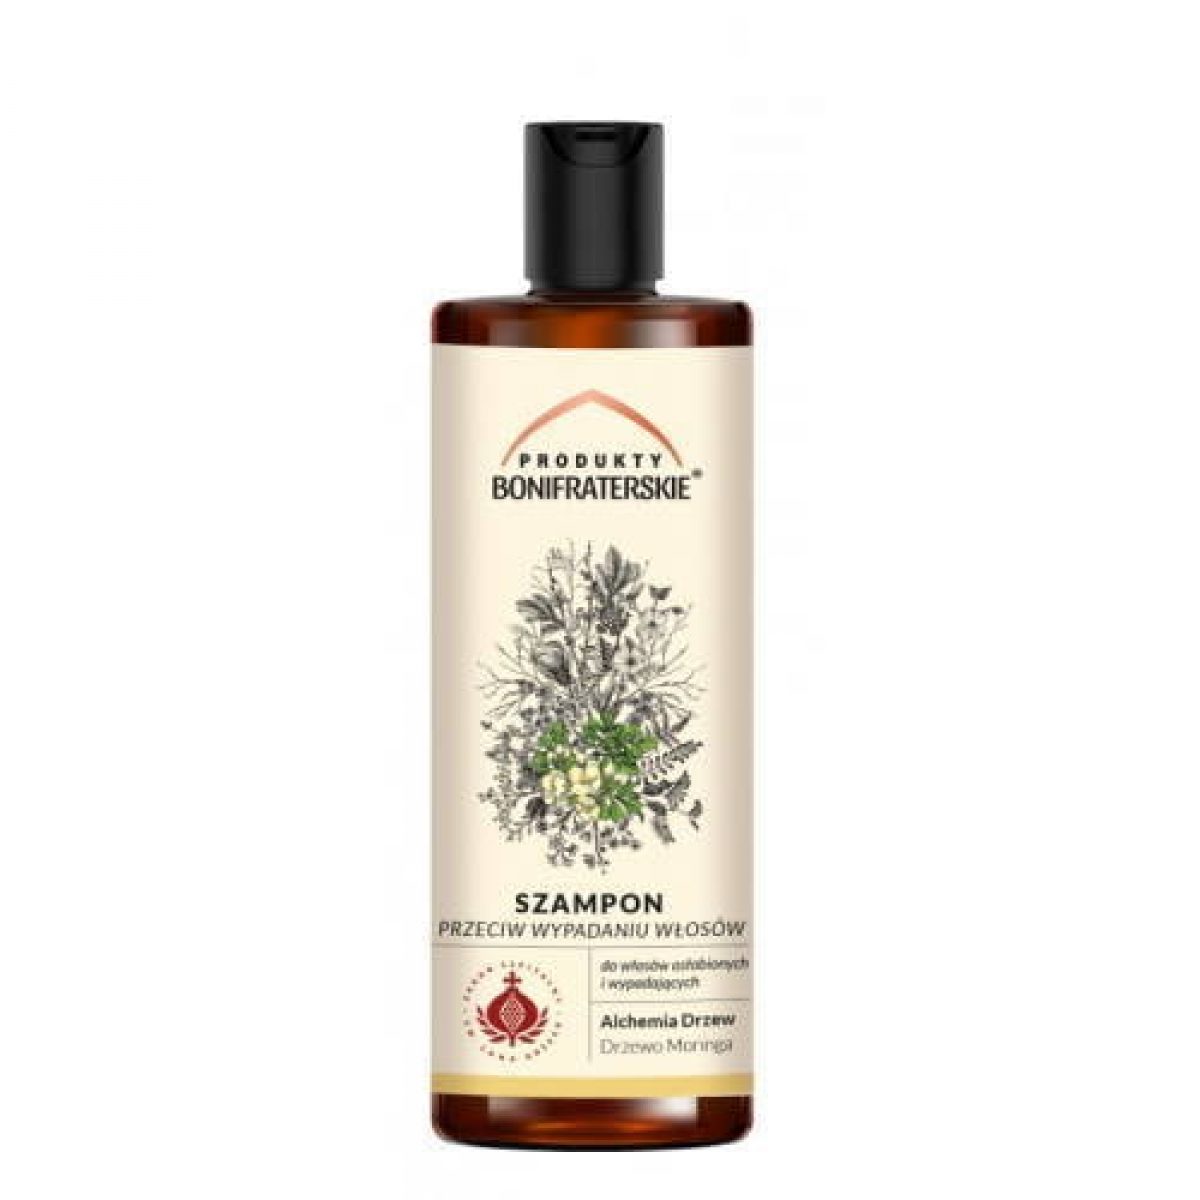 szampon przeciw wypadaniu włosów na bazie wywaru z wilczych kwiatów